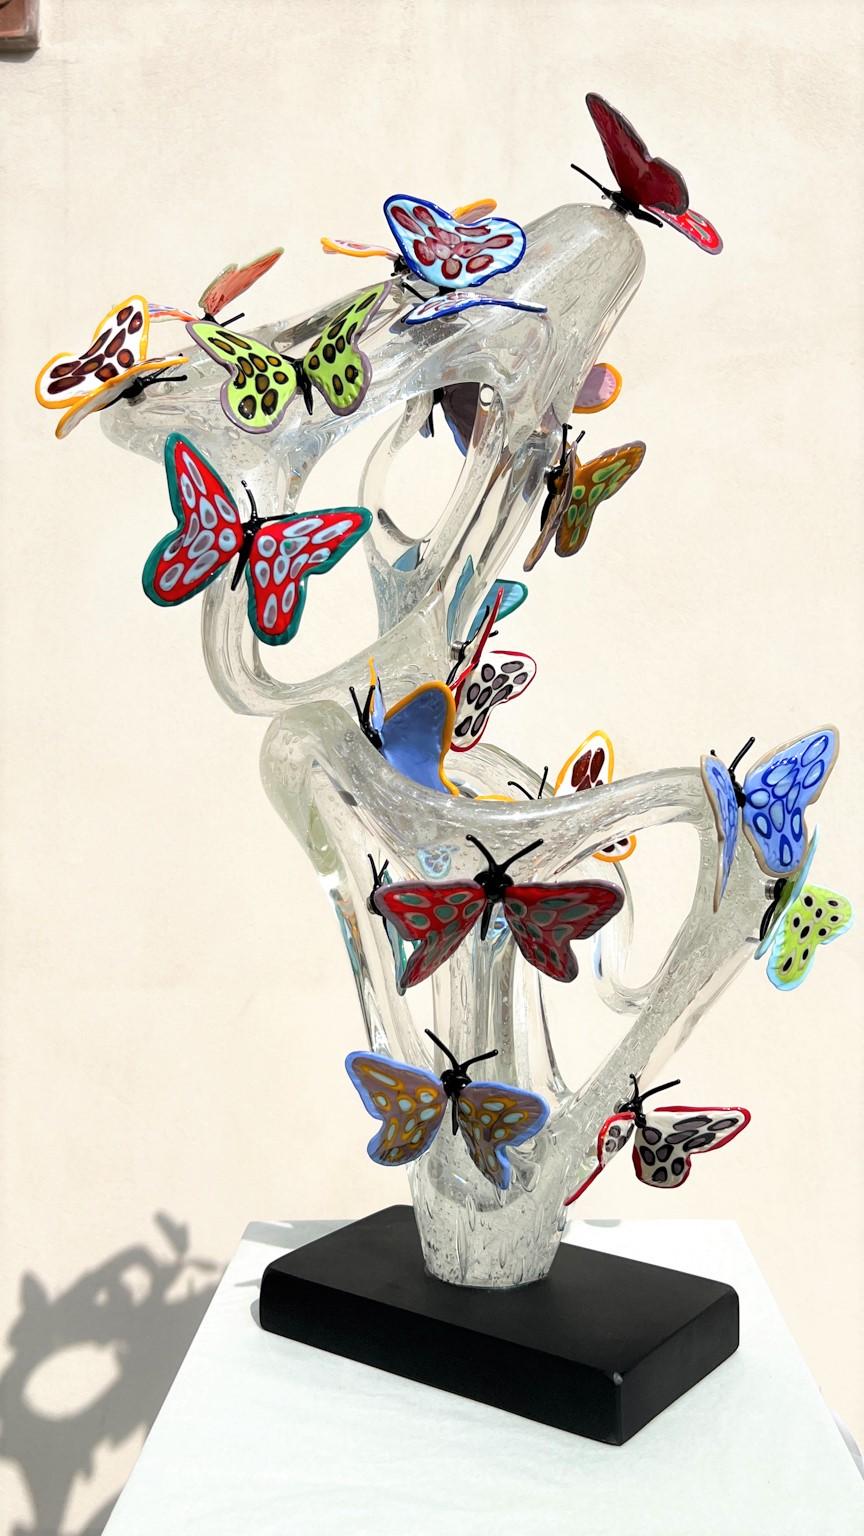 Handmade Crystal Pulegoso Murano Glas Skulptur Unendlichkeit mit 21 in Paste mehrfarbigen Schmetterlingen mit Magneten befestigt. 
Moderne Skulptur ideal für eine moderne und rustikale klassische Umgebung, für jedermann. Diese Arbeit wurde in